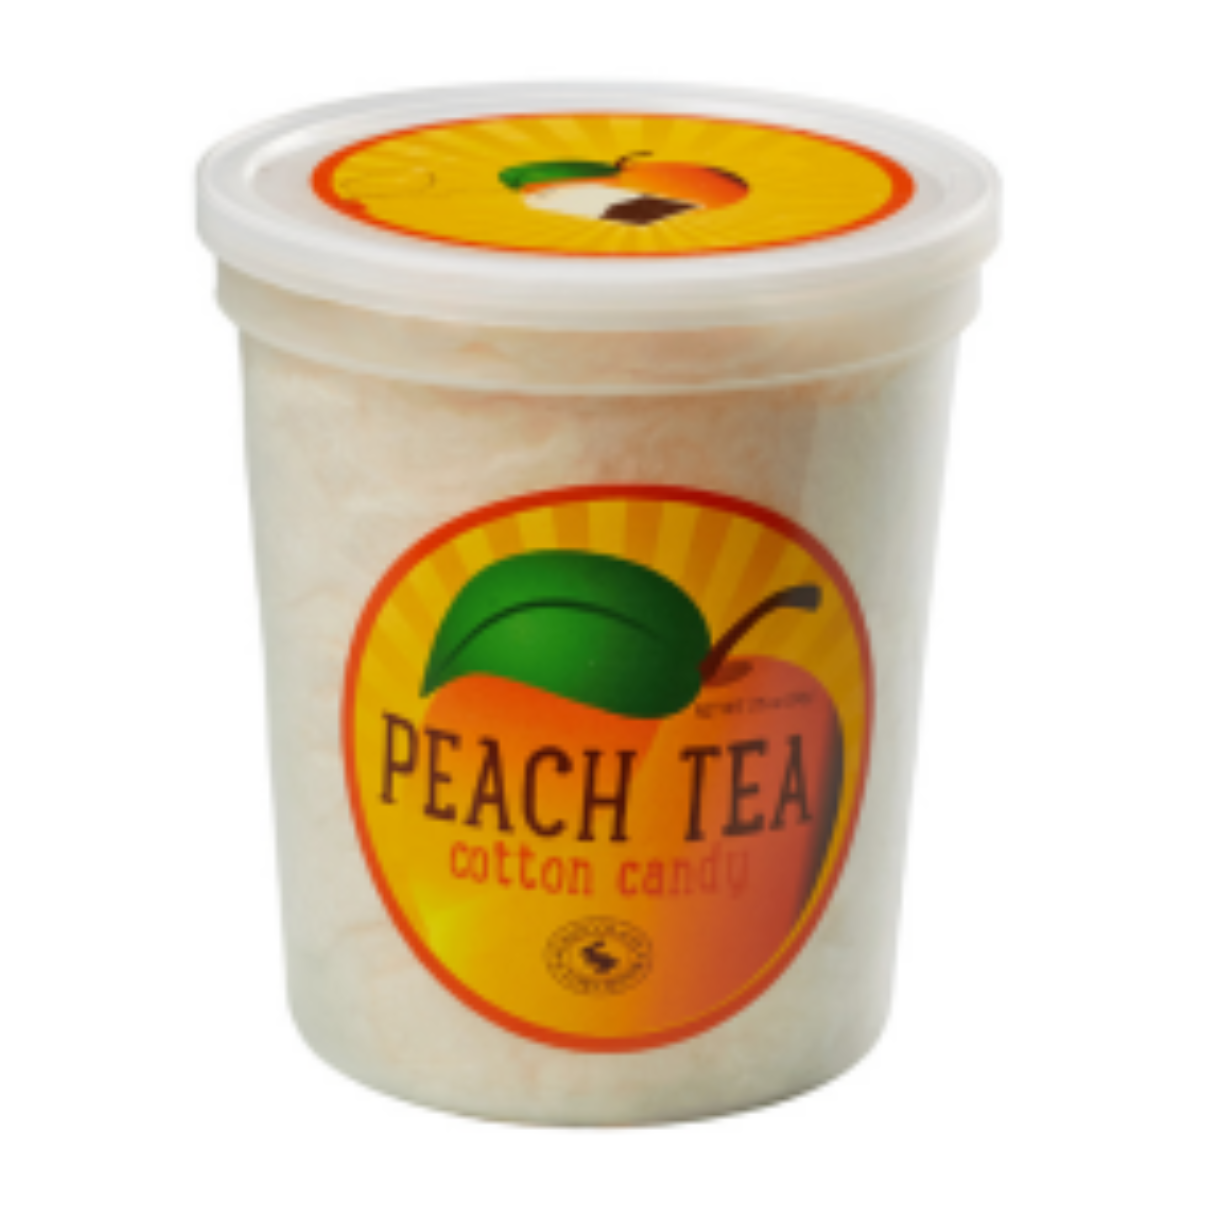 Peach Tea Cotton Candy 1.75oz - 12ct